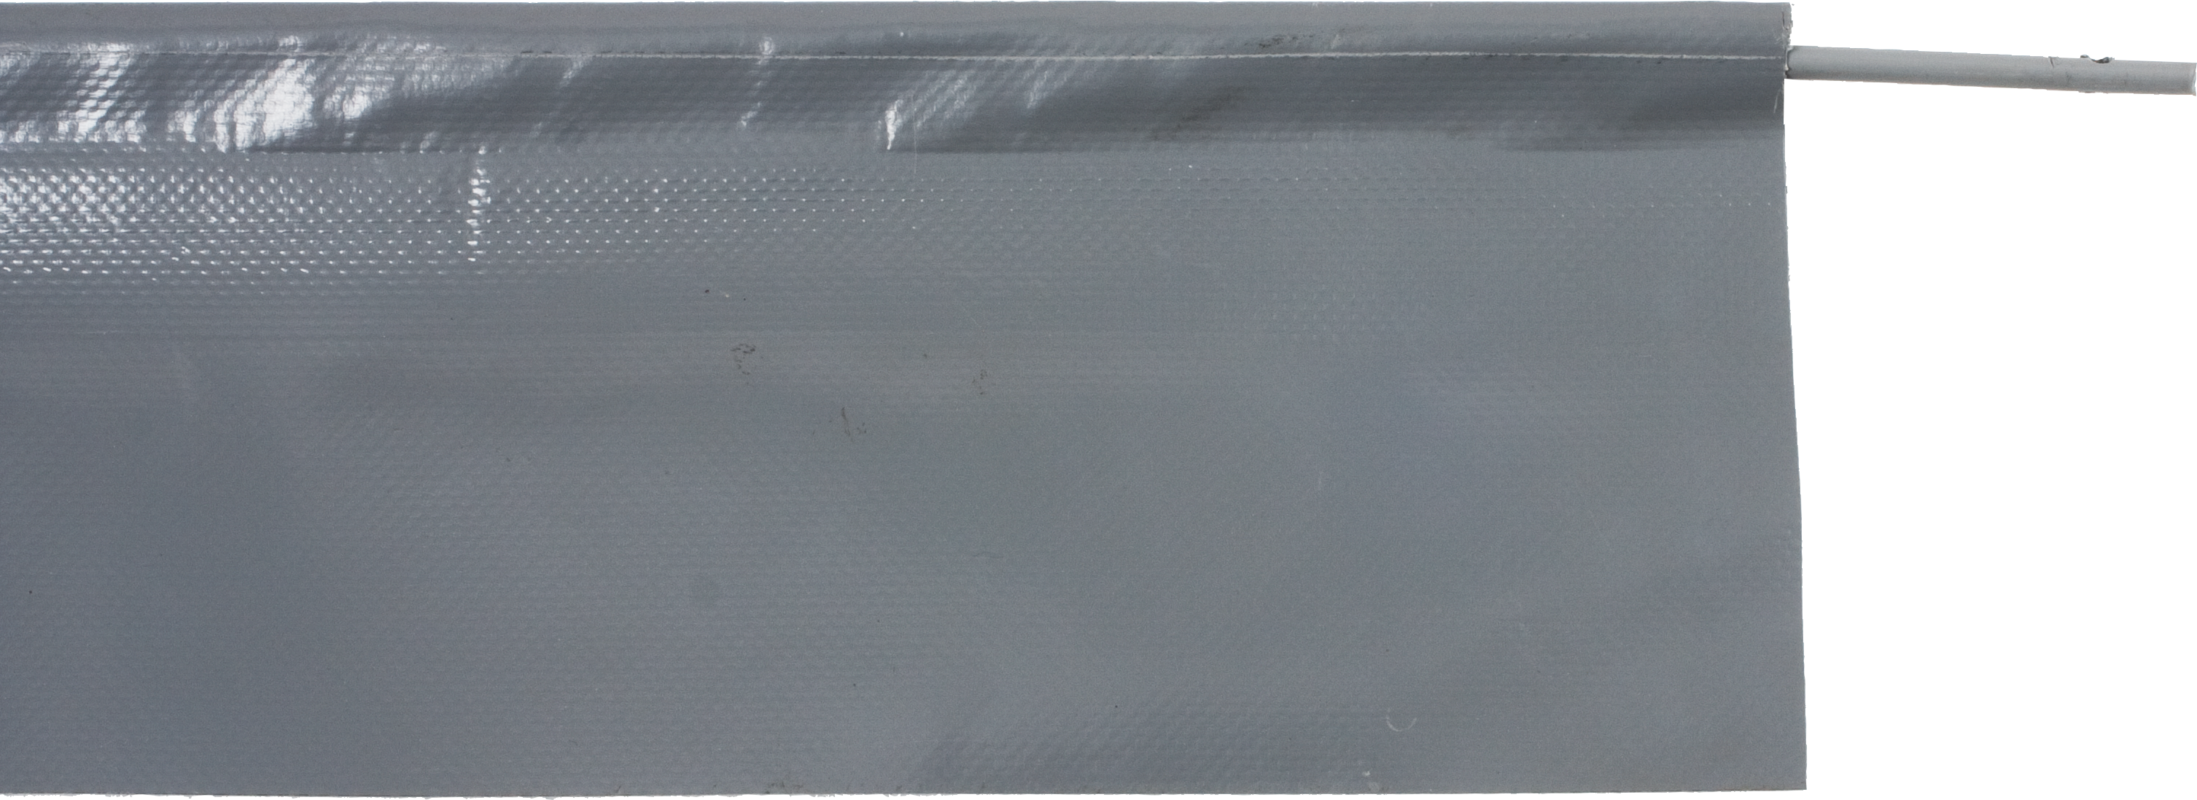 Bodenabschlusslippe mit Kederschnur Höhe 14 cm, Farbe grau, per Meter